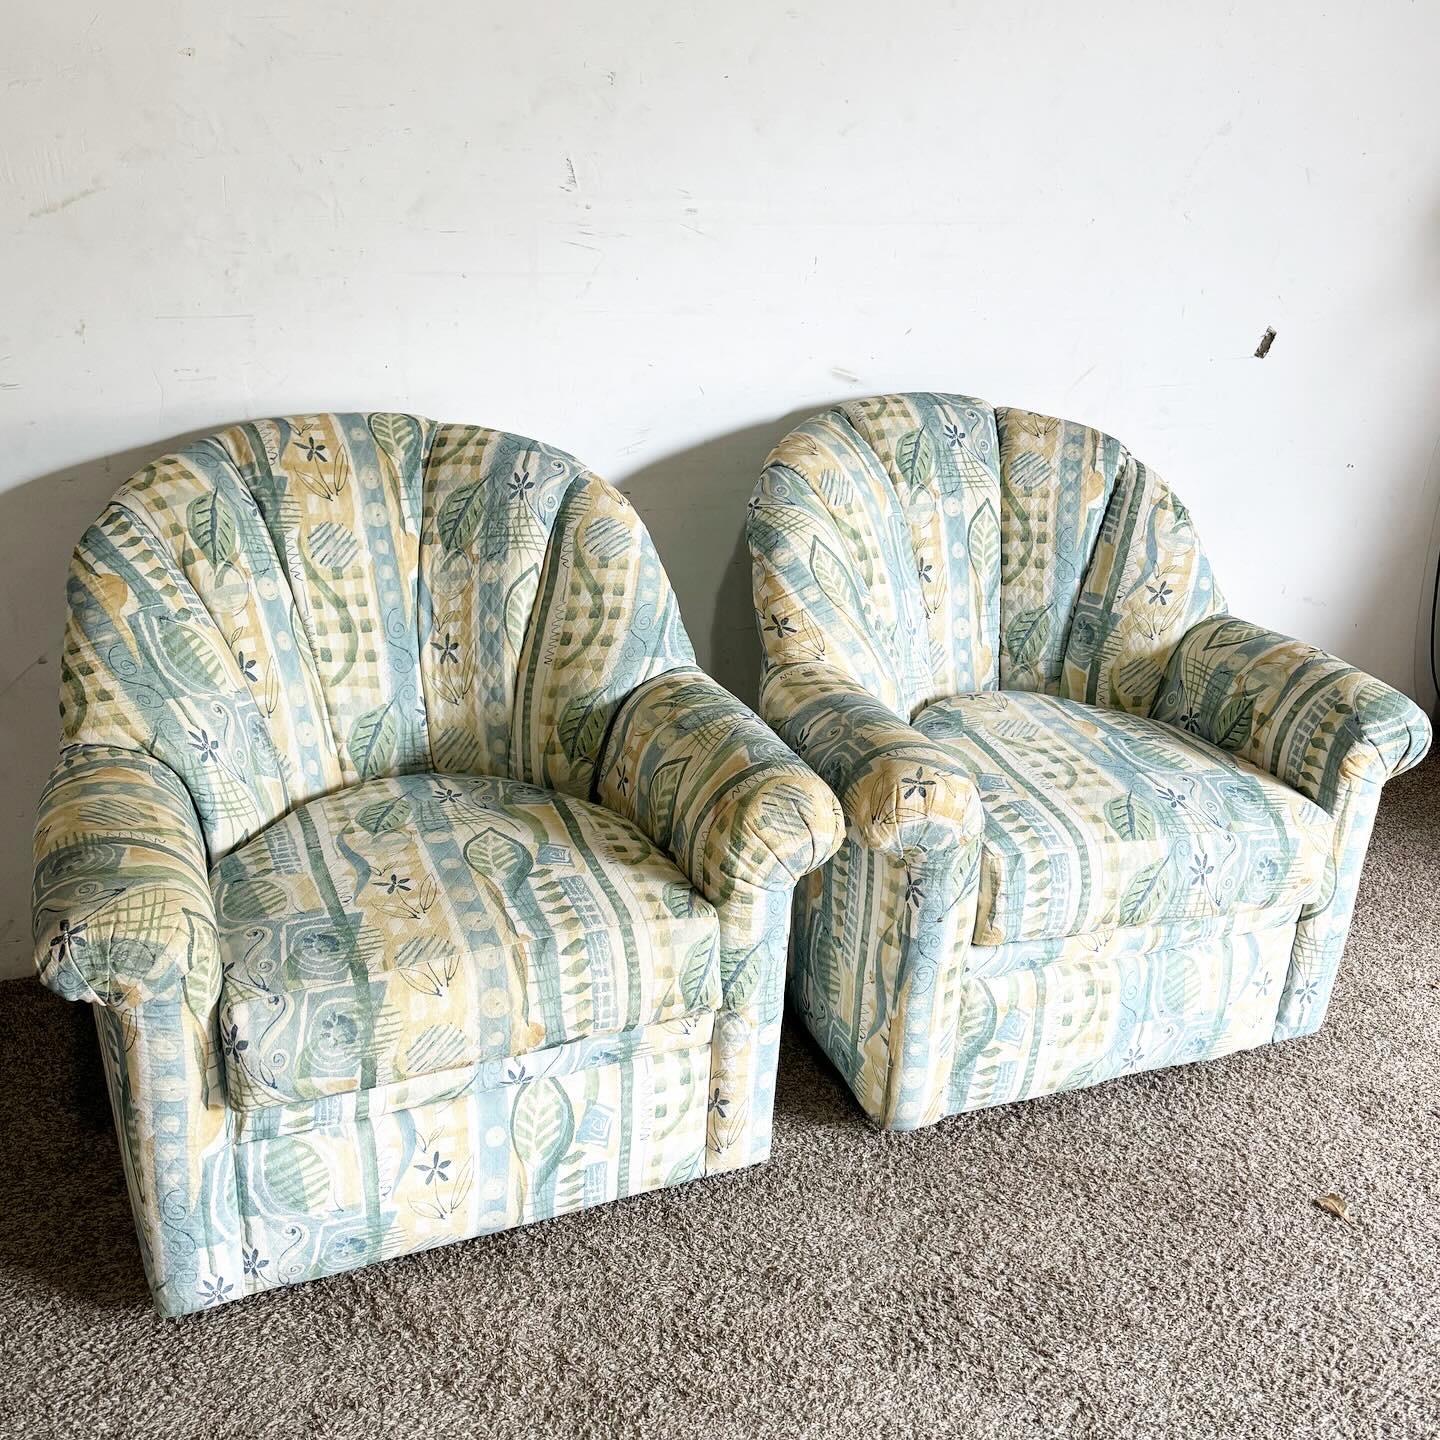 Adoptez le charme du design postmoderne avec cette paire de chaises pivotantes postmodernes en tissu à motif floral. Ces chaises dynamiques présentent des motifs floraux audacieux et colorés qui confèrent une atmosphère à la fois sophistiquée et